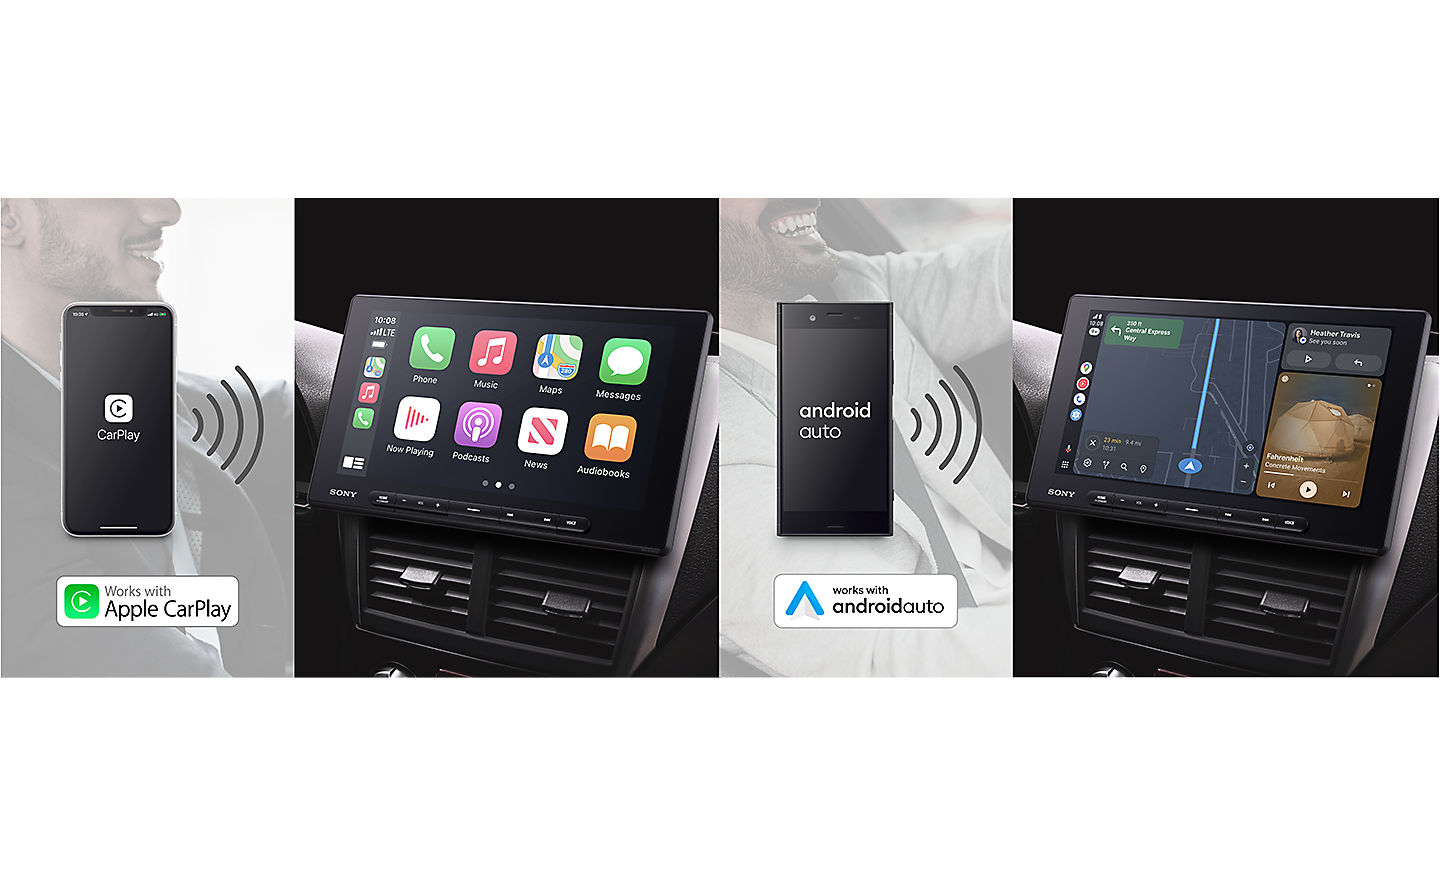 صور لجهاز XAV-AX8500 متصل عبر Wi-Fi بكل من Apple CarPlay وAndroid Auto